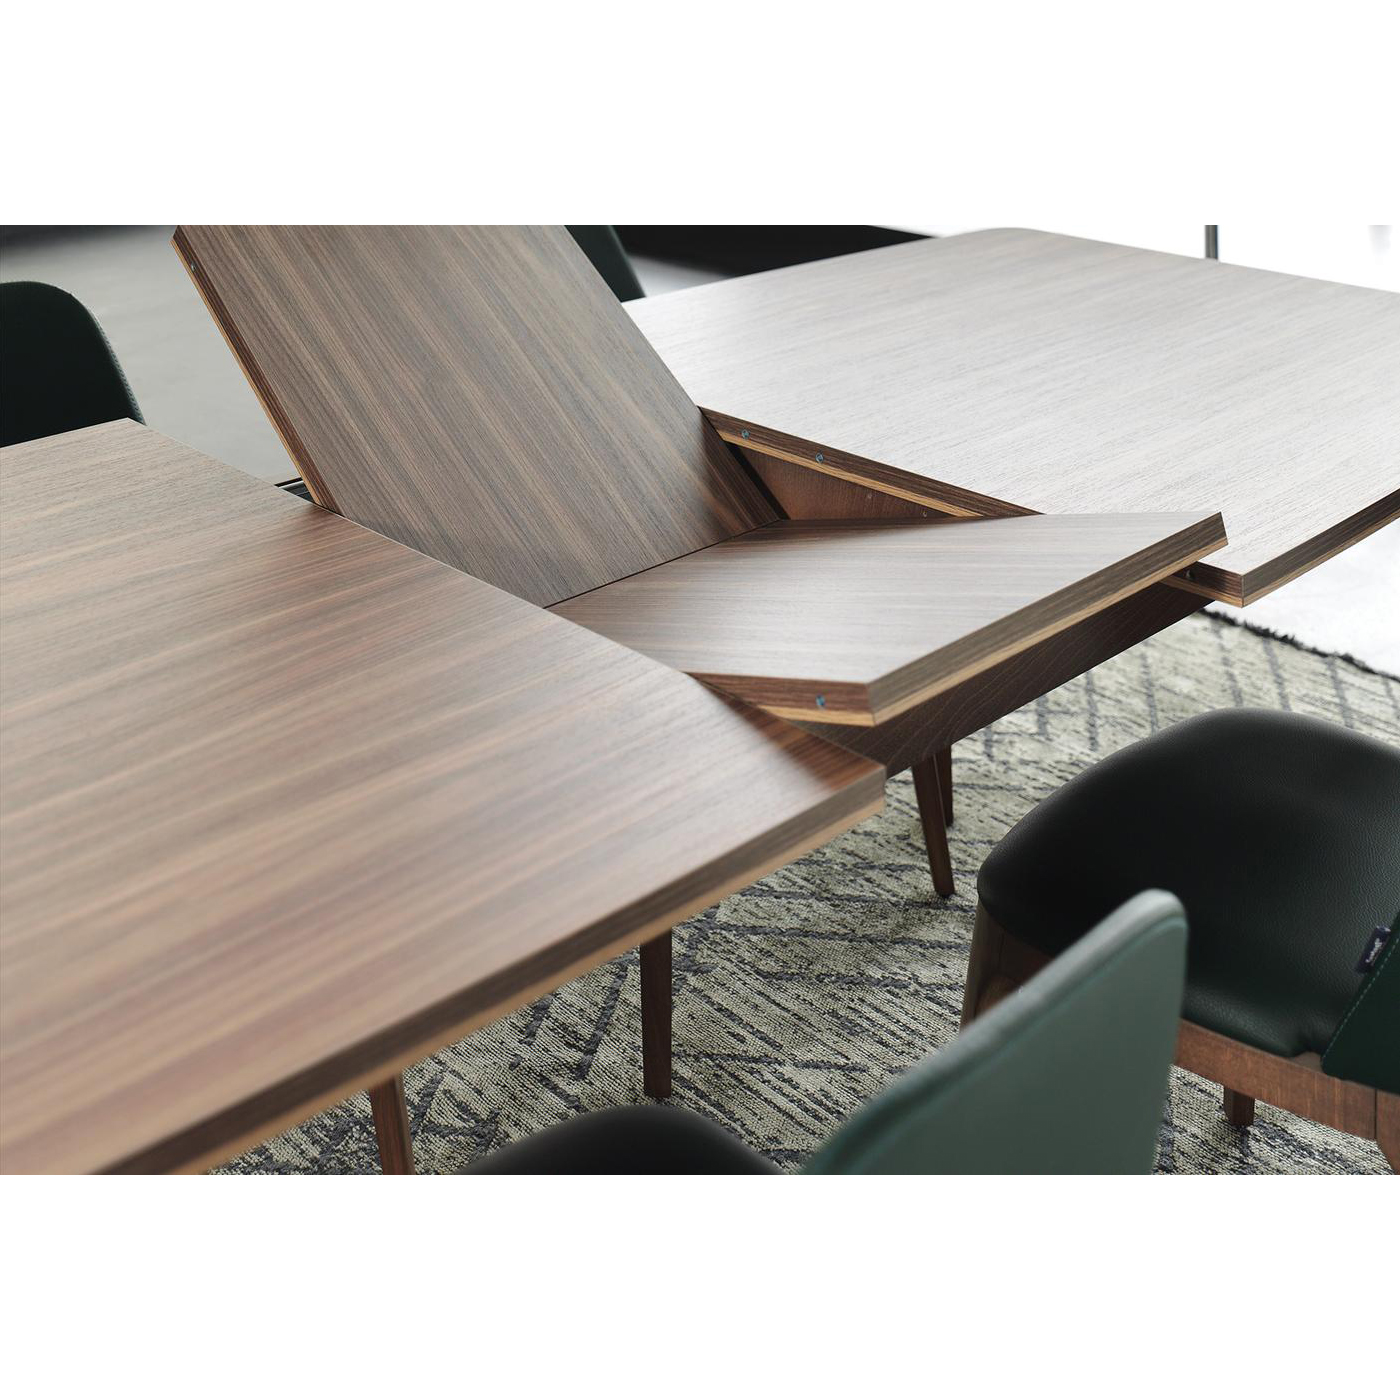 Стол обеденный Enza Home Raum, прямоугольный, раздвижной, размер 160(200)х95х76 см07.182.0538.0000.0173.0000.